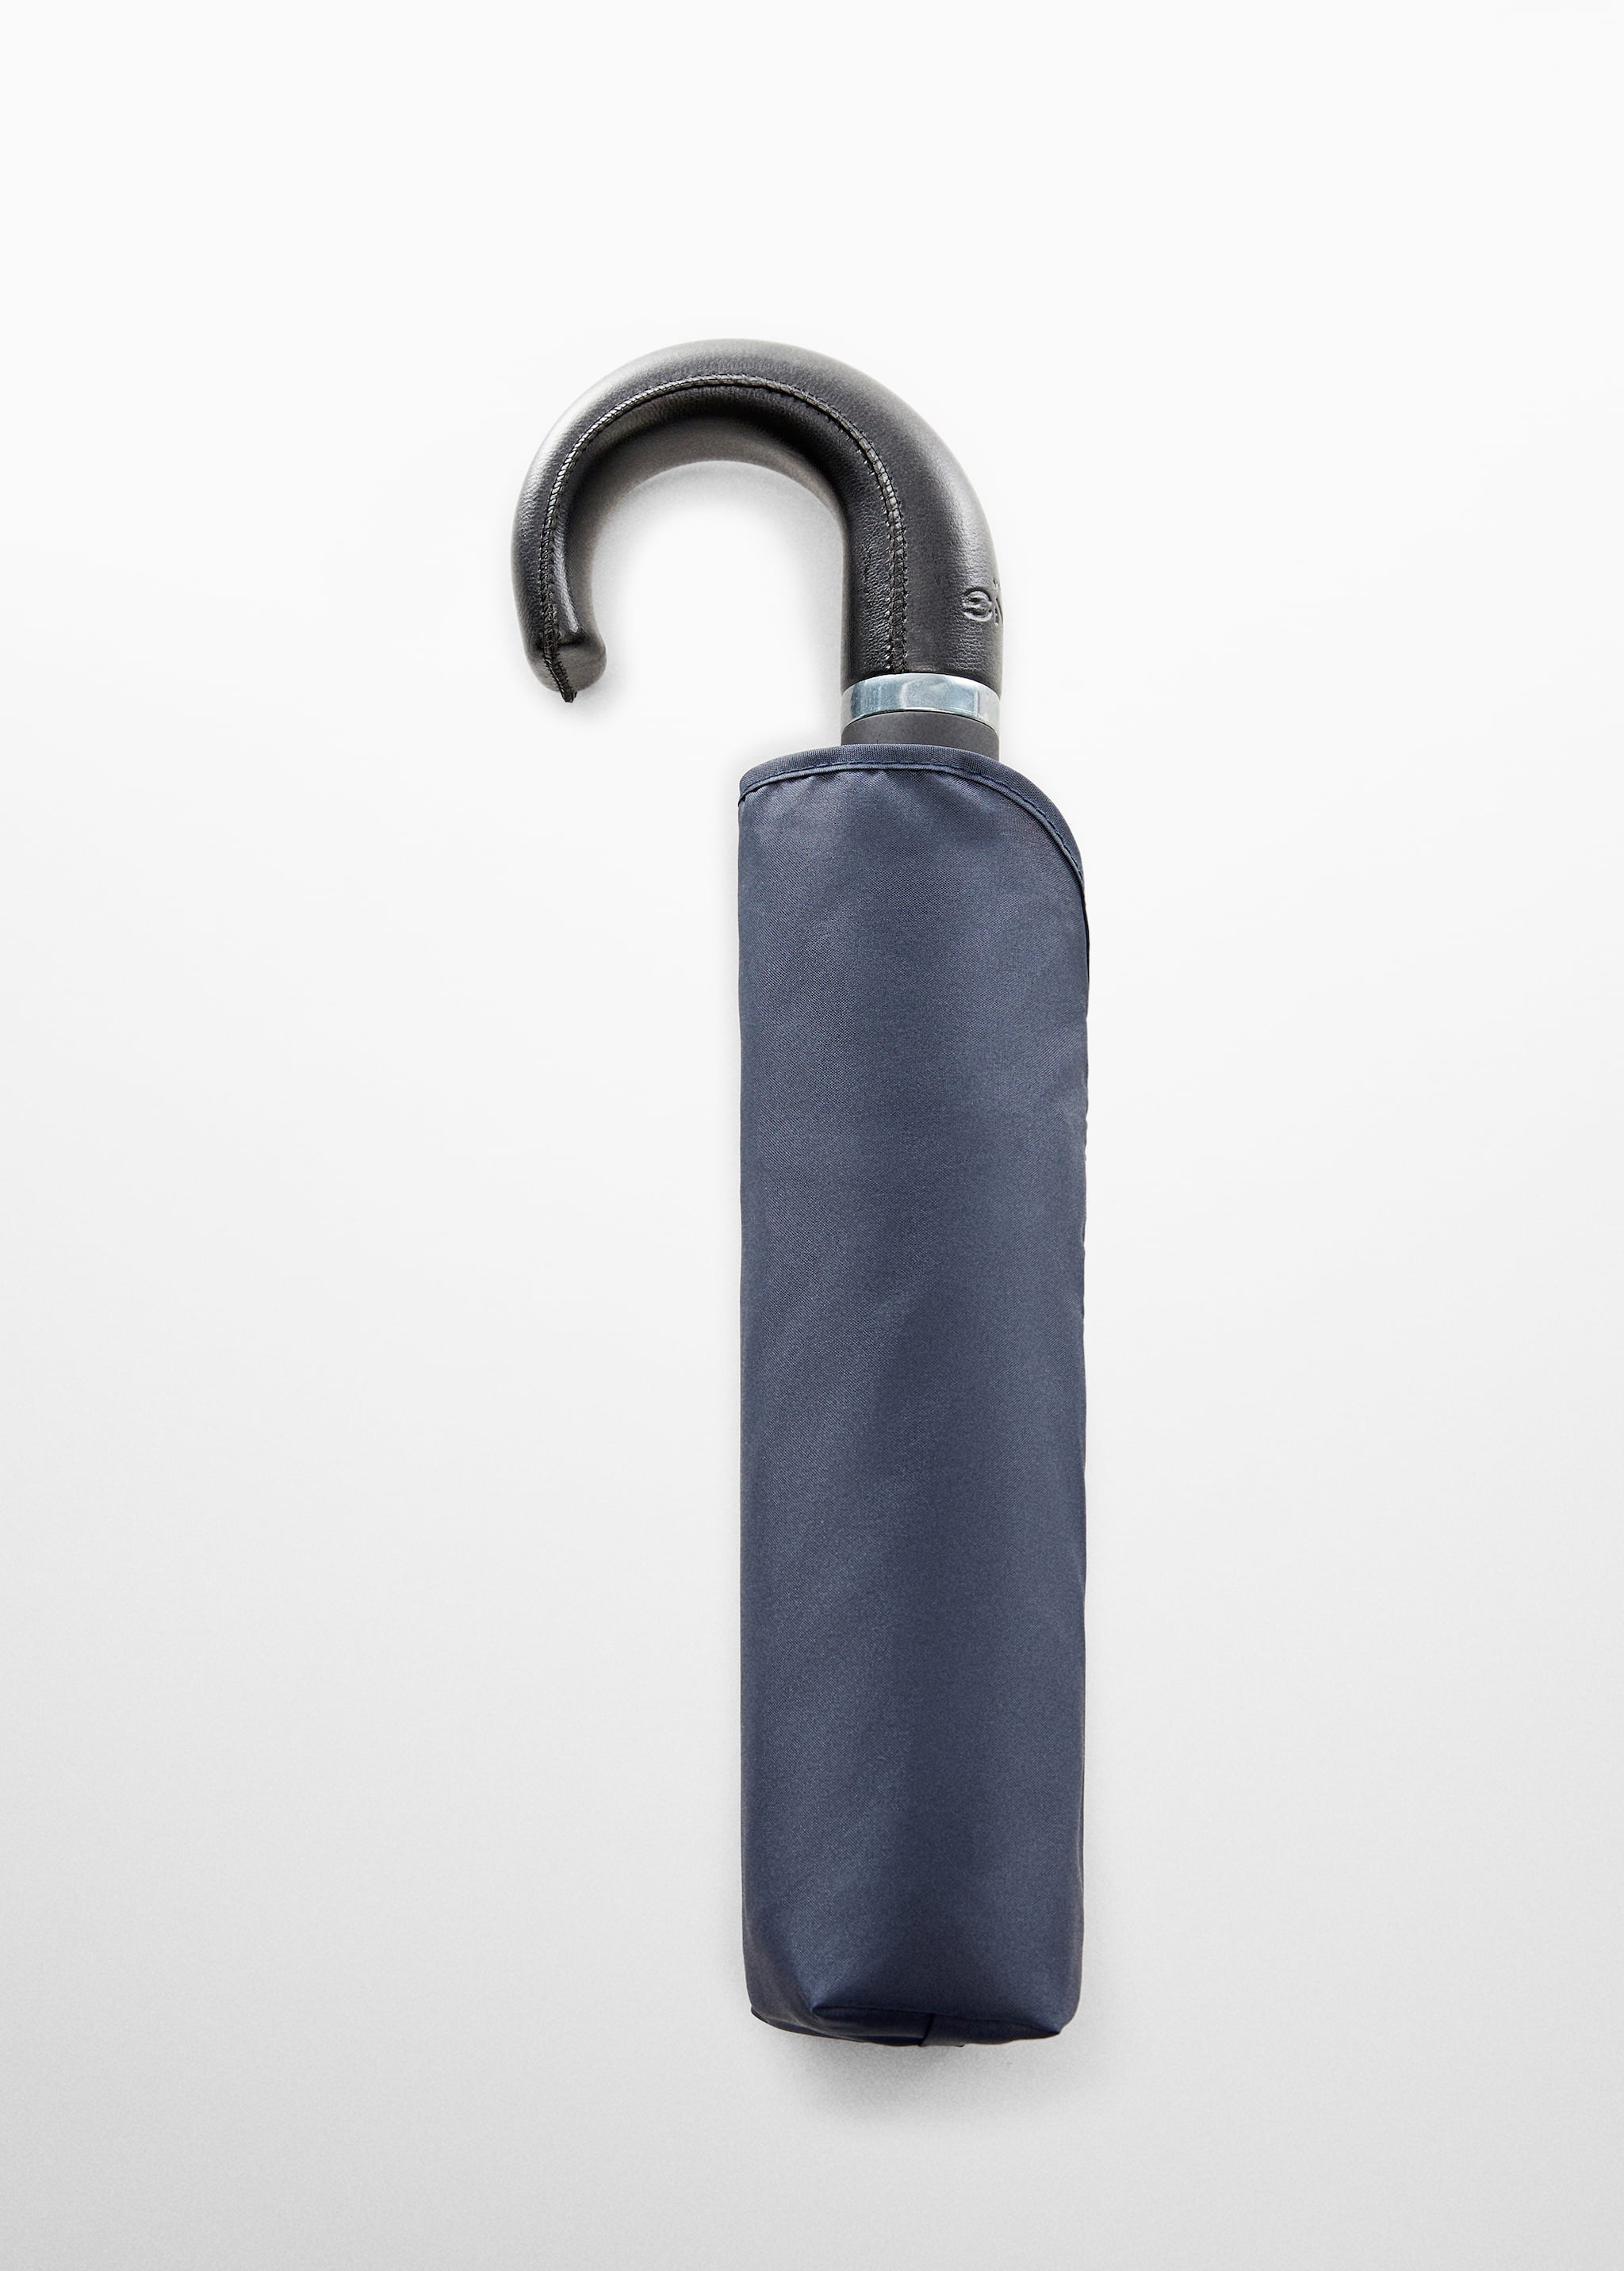 Paraguas plegable liso - Artículo sin modelo